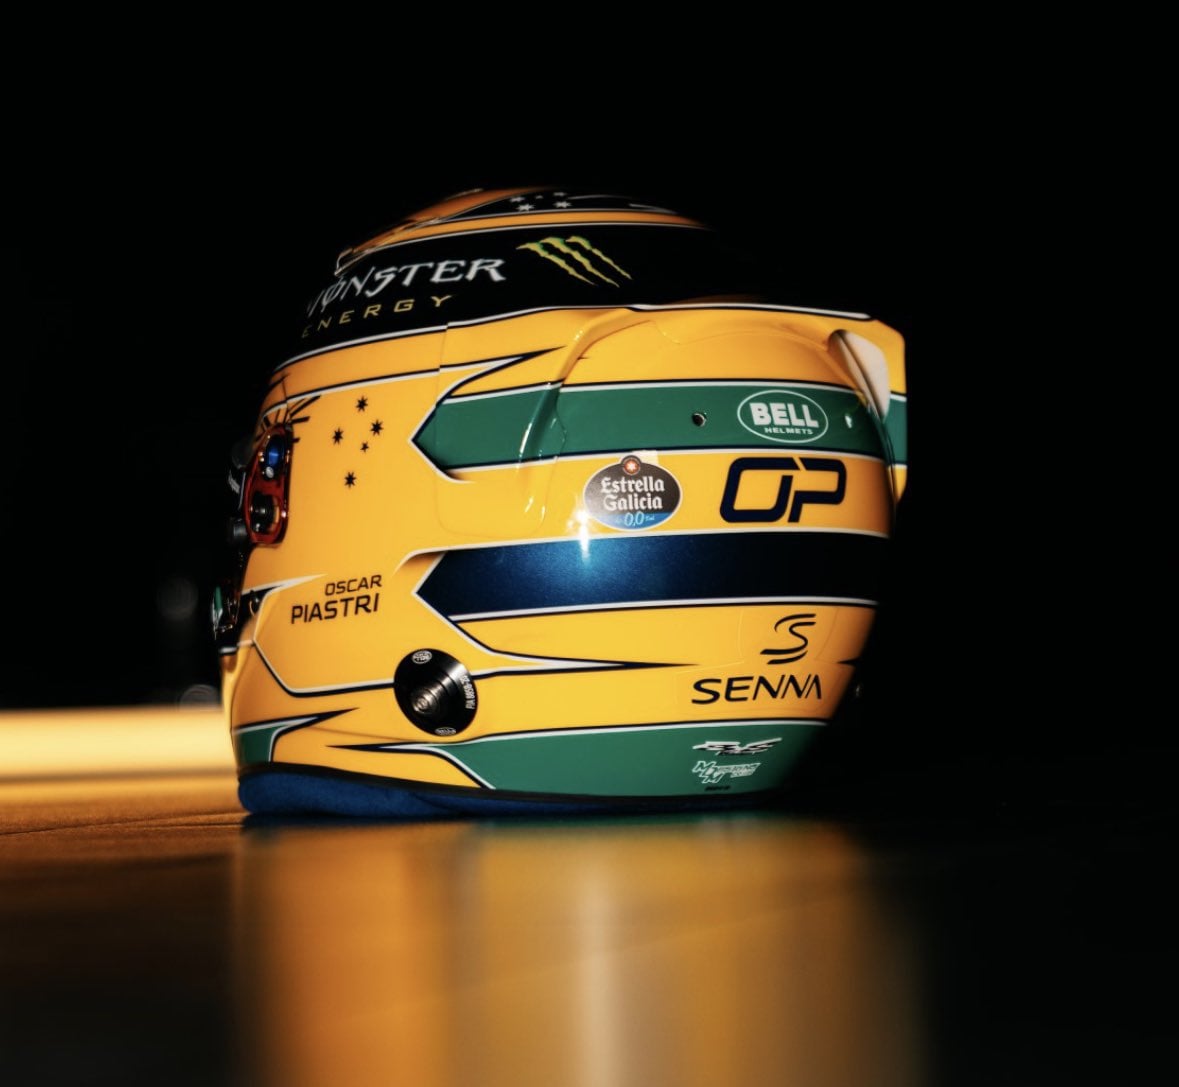 Helm spesial Oscar Piastri untuk GP Monako. Tribut spesial ke Ayrton Senna, tapi keinget juga sama helm kuning yang dipakai Hamilton dulu... 😅